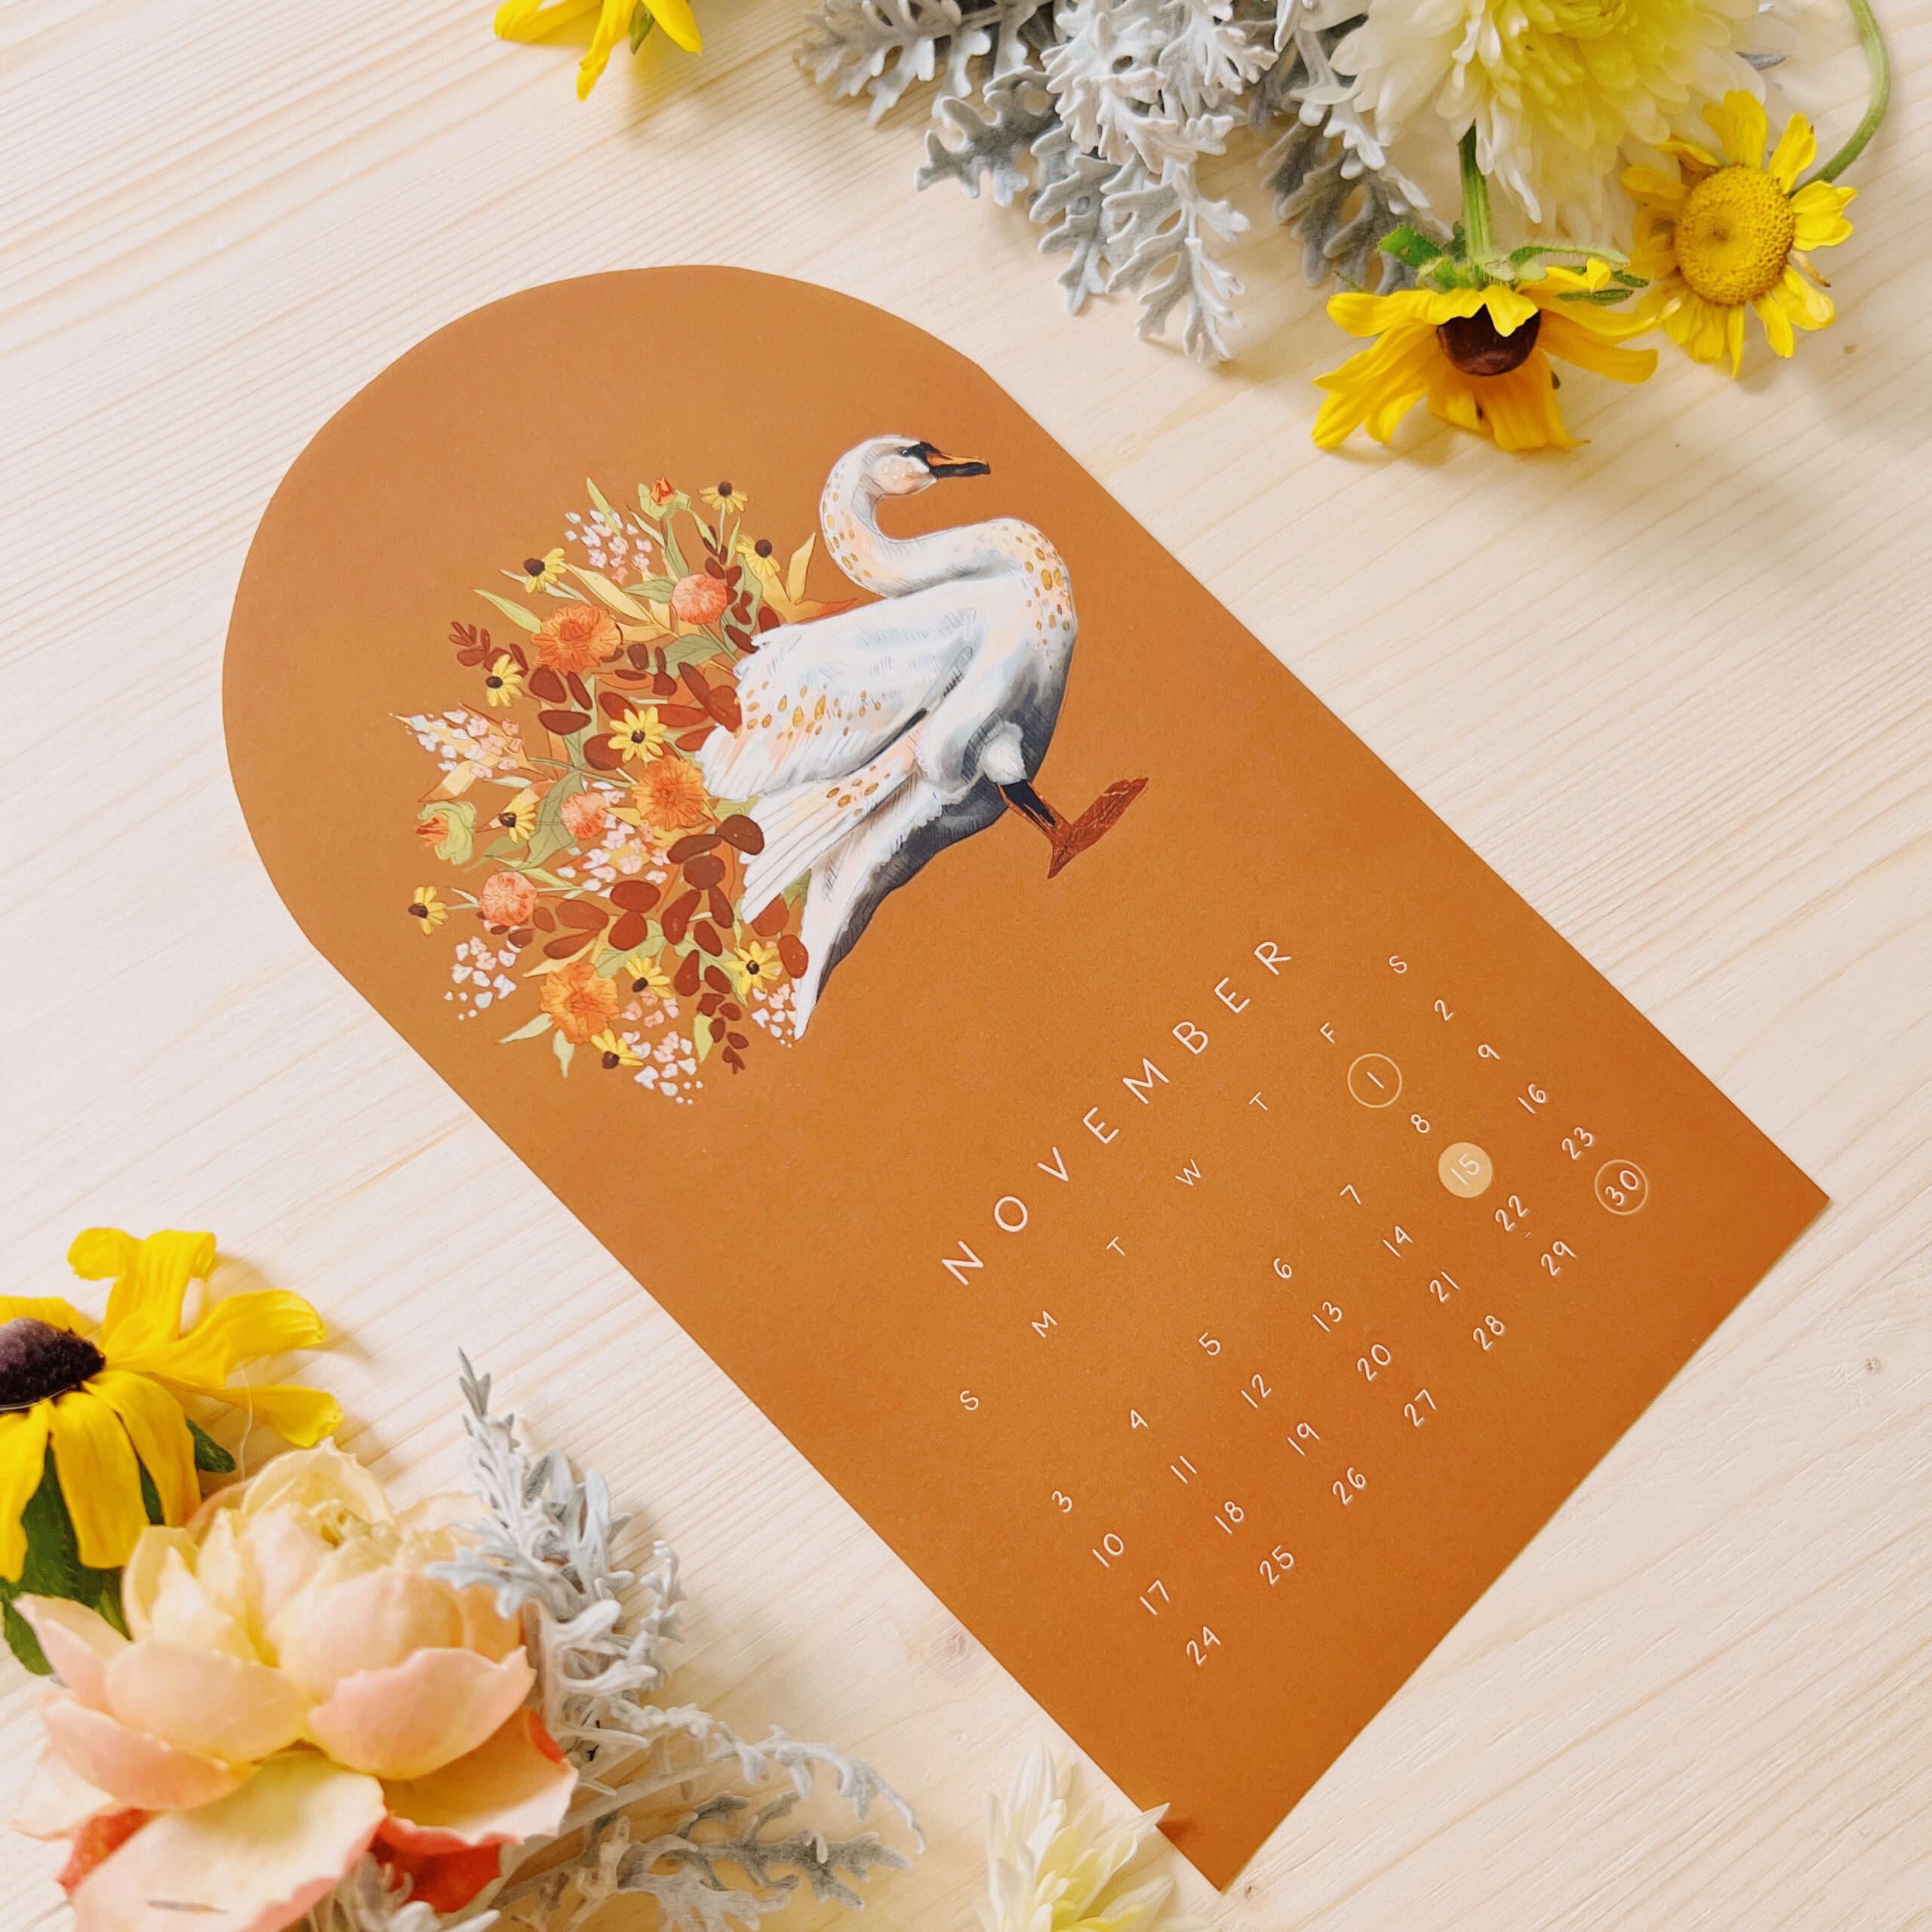 Swan Calendar by Darcy Goedecke